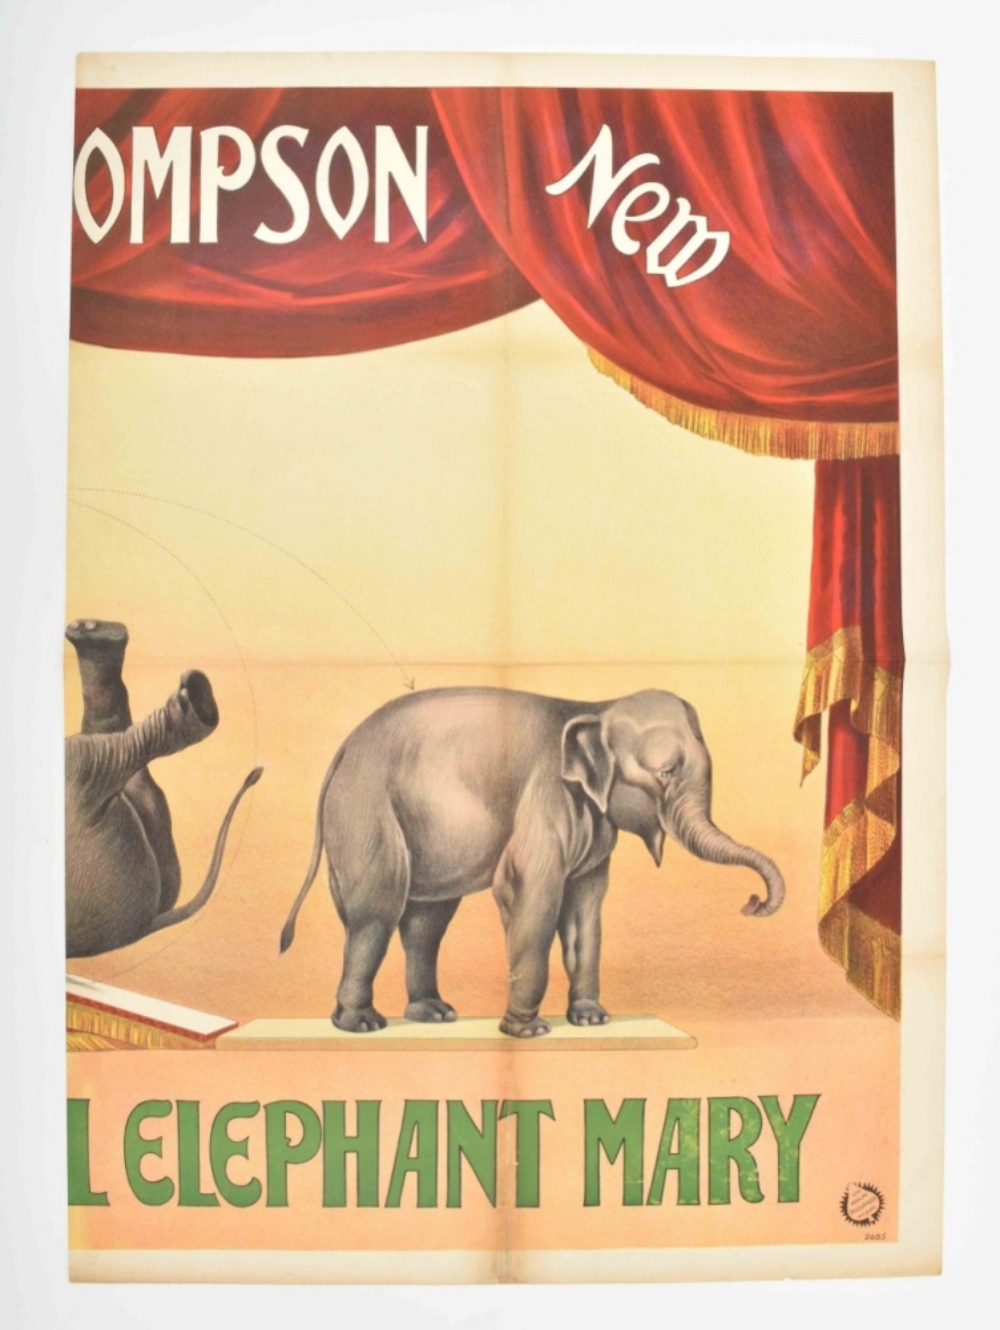 [Elephants] Eph. Thompson and his wonderful elephant Mary - Image 5 of 8